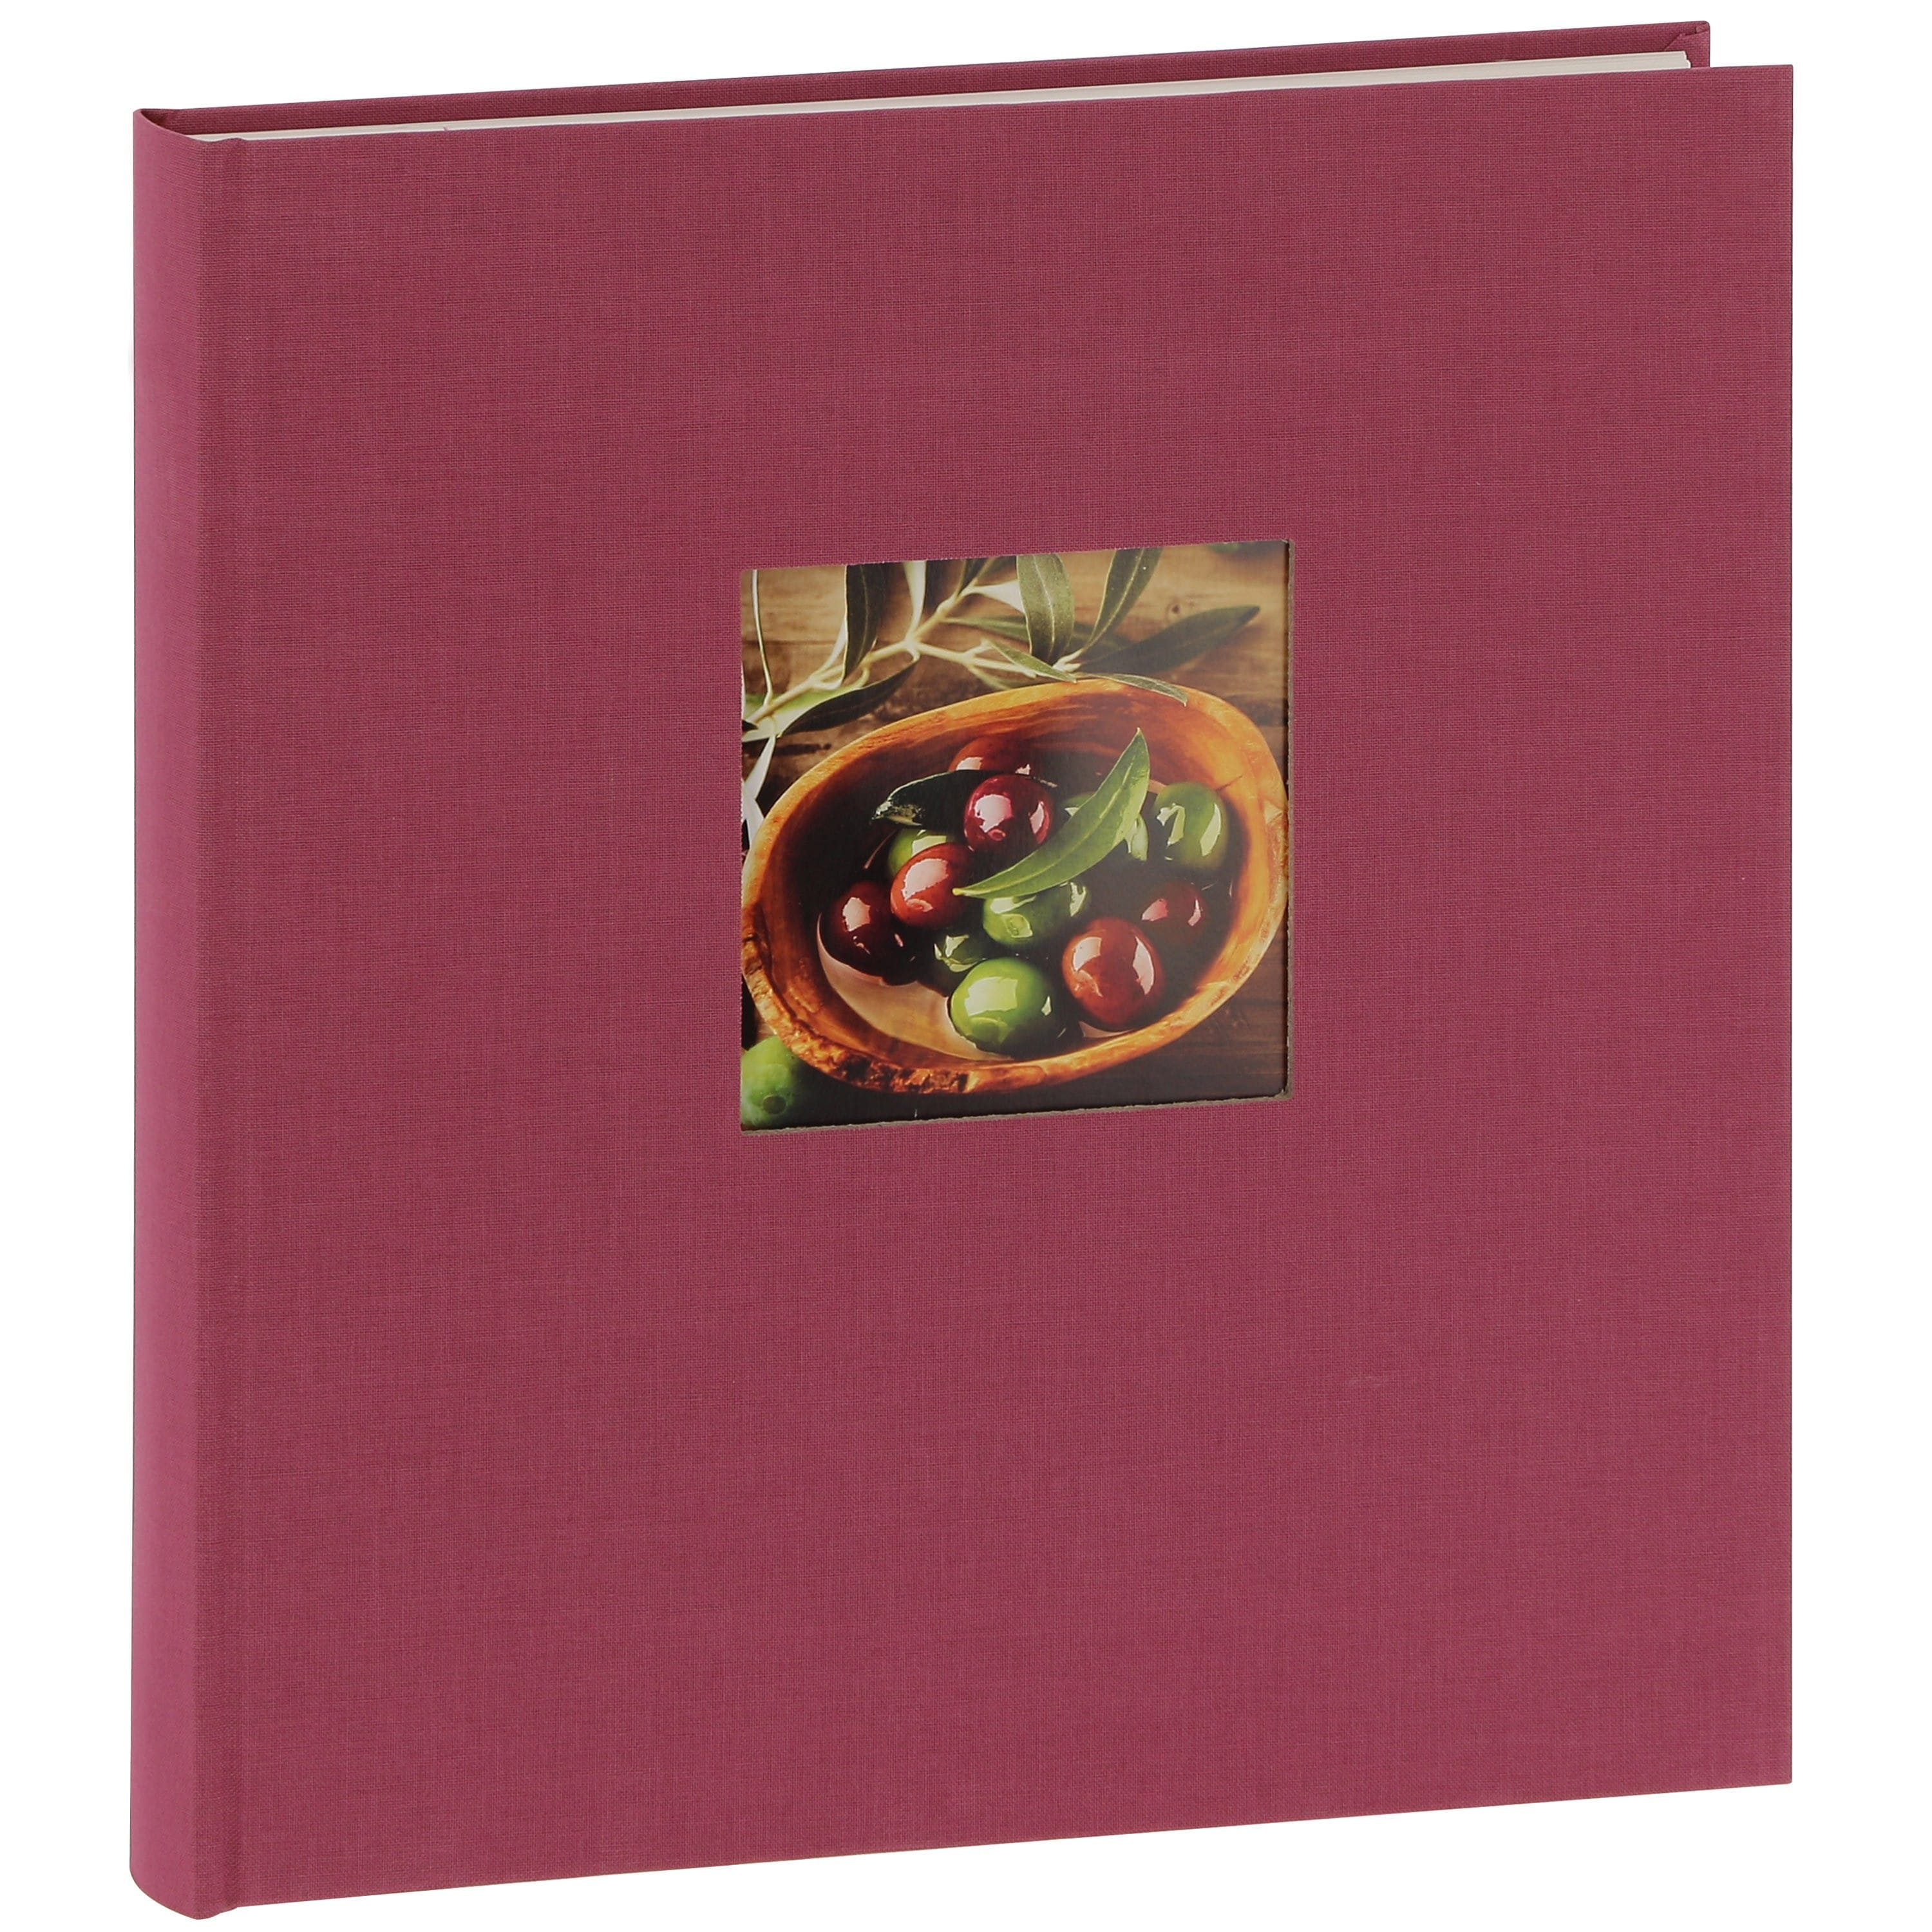 GOLDBUCH - Album photo traditionnel BELLA VISTA - 60 pages blanches + feuillets cristal - 240 photos - Couverture Rose Fushia 29x31cm + fenêtre